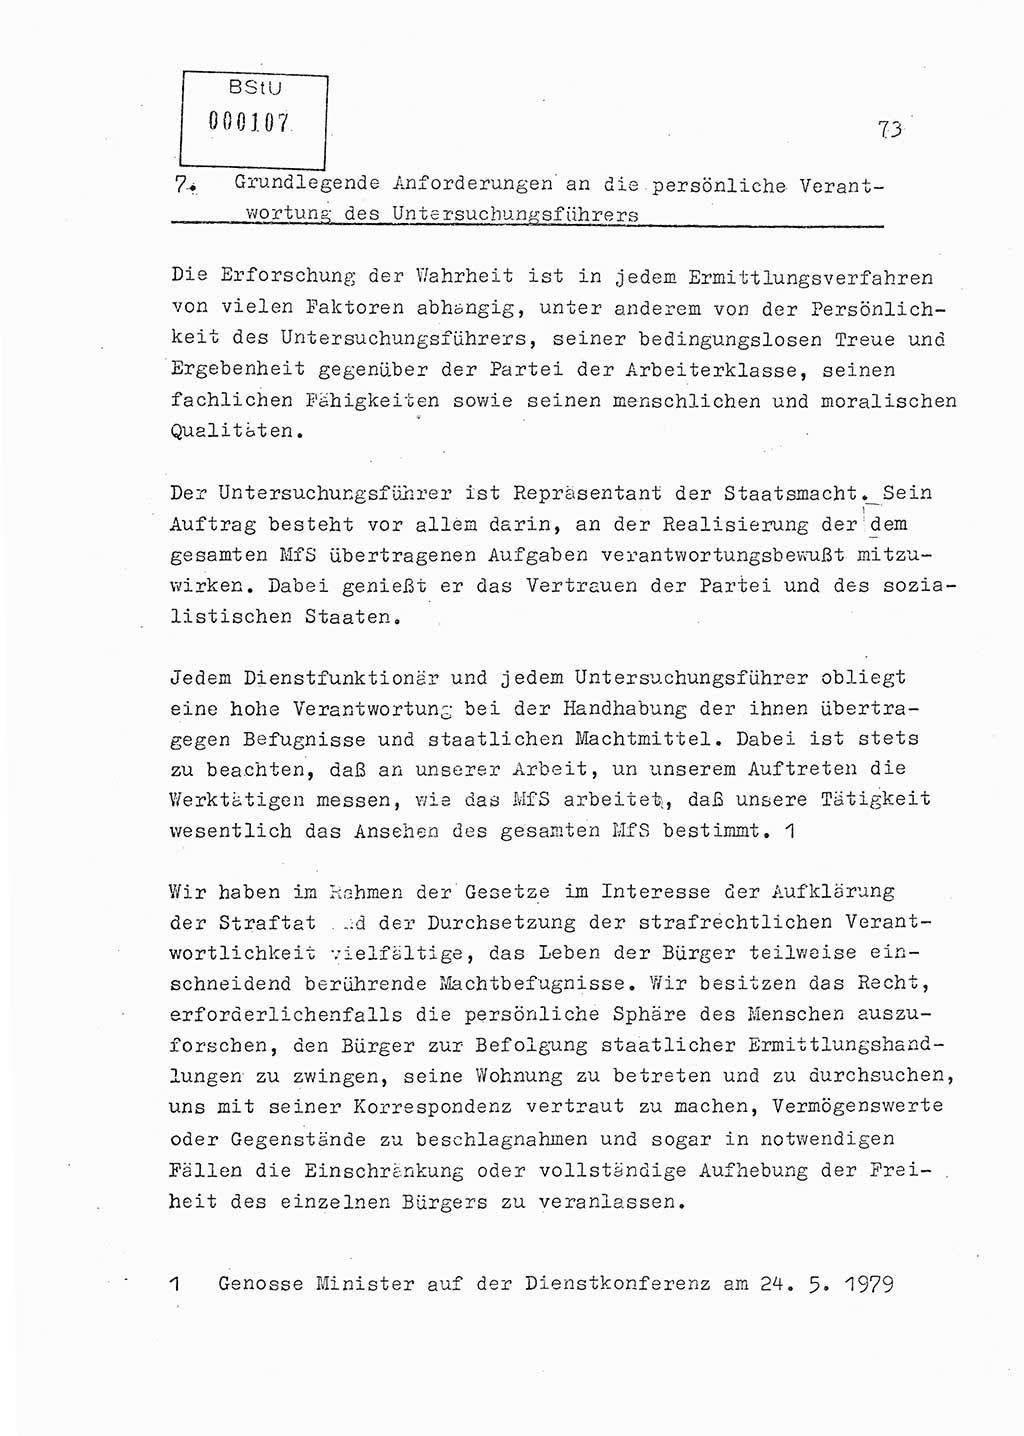 Lektion Ministerium für Staatssicherheit (MfS) [Deutsche Demokratische Republik (DDR)], Hauptabteilung (HA) Ⅸ, Berlin 1979, Seite 73 (Lekt. Bew.-Fü. EV MfS DDR HA Ⅸ 1979, S. 73)